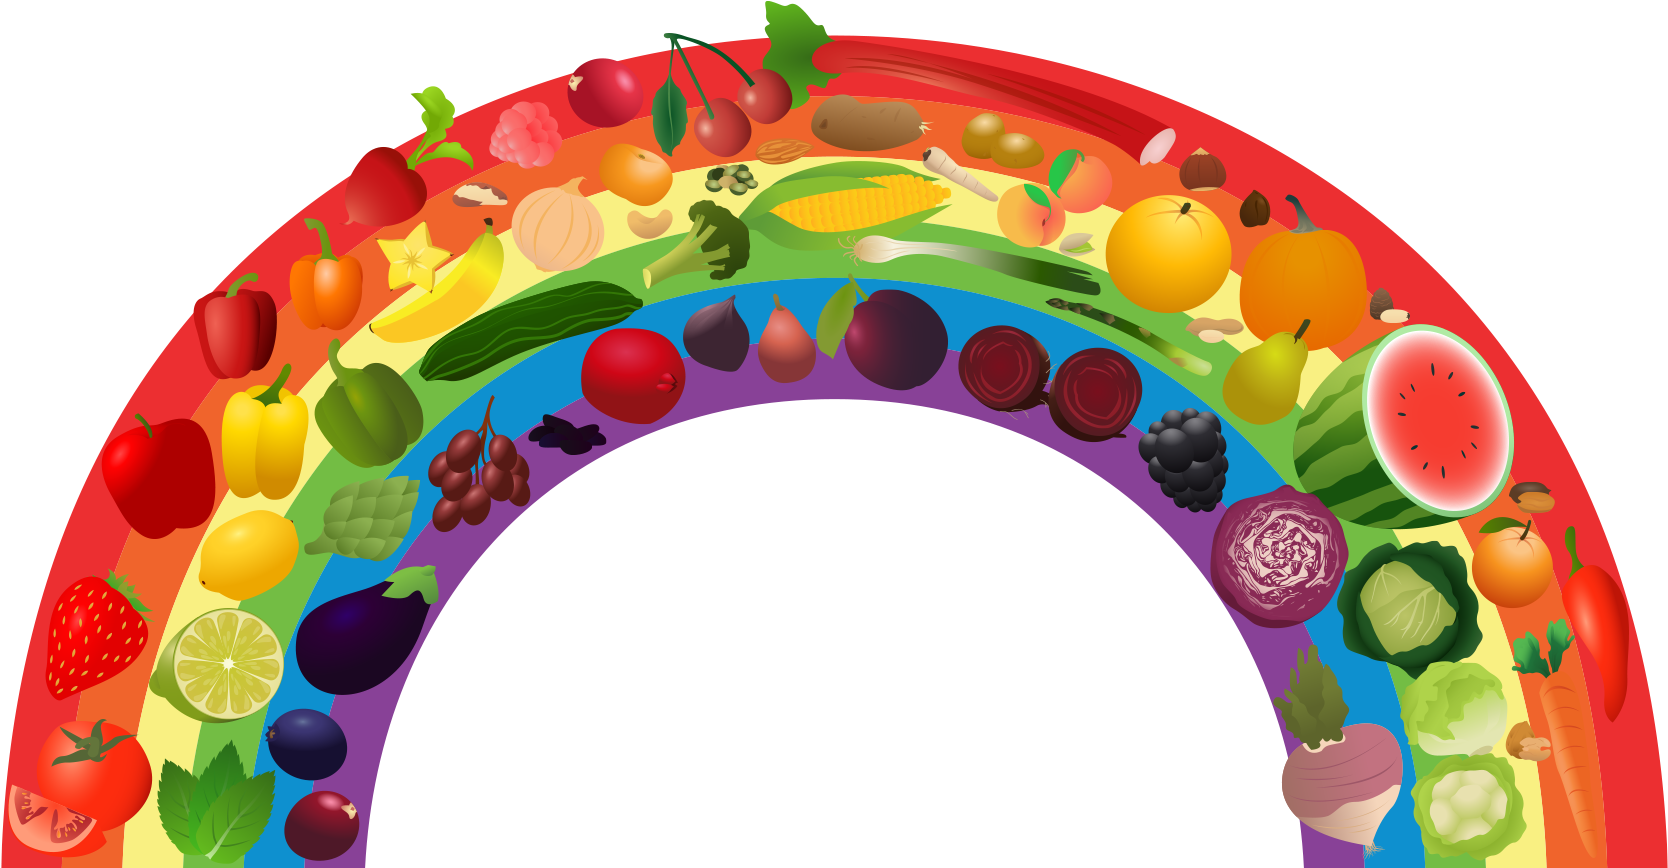 View Rainbow - Fruit And Veg Rainbow (1751x912)